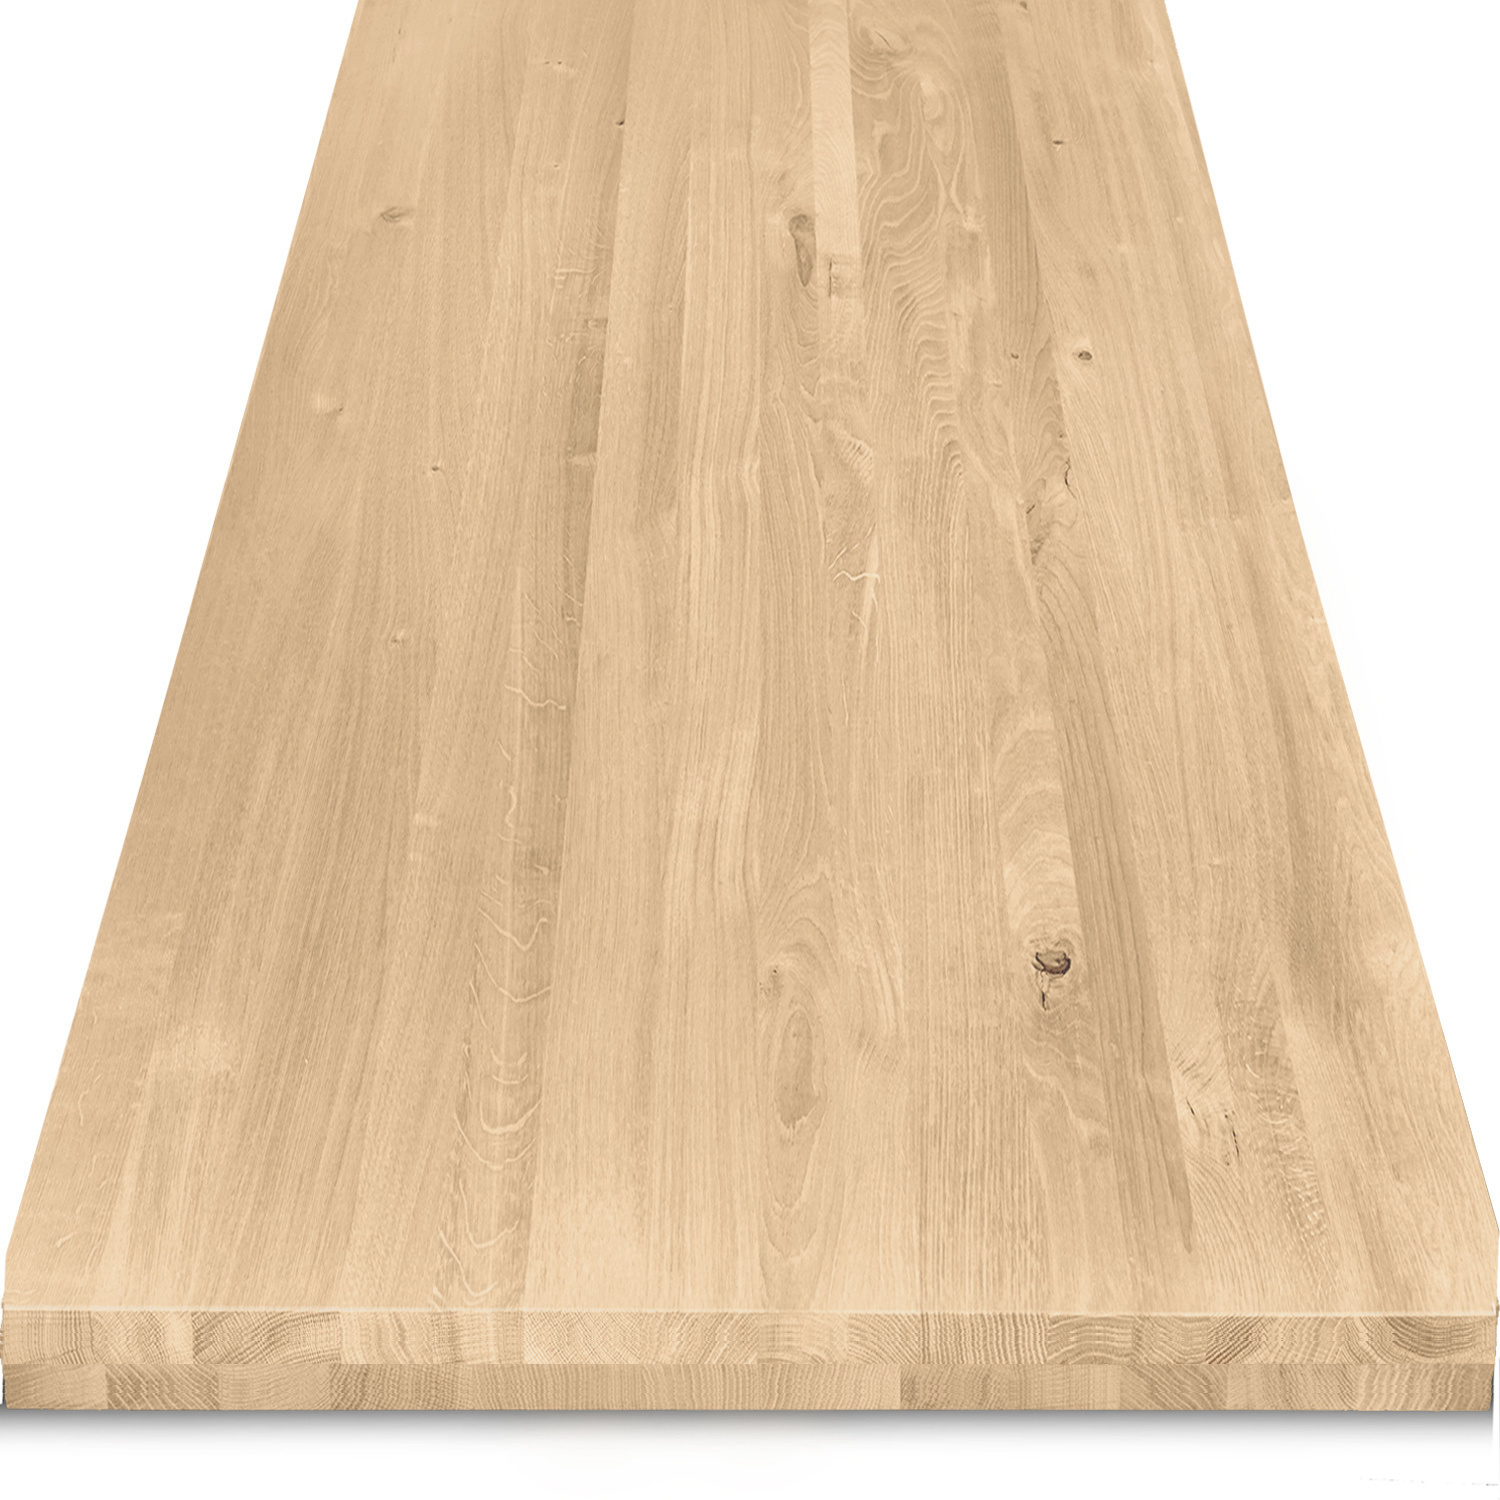  Tischplatte Eiche nach Maß - 6 cm dick (2-lagig) - Eichenholz rustikal - Eiche Tischplatte massiv - verleimt & künstlich getrocknet (HF 8-12%) - 50-120x50-350 cm